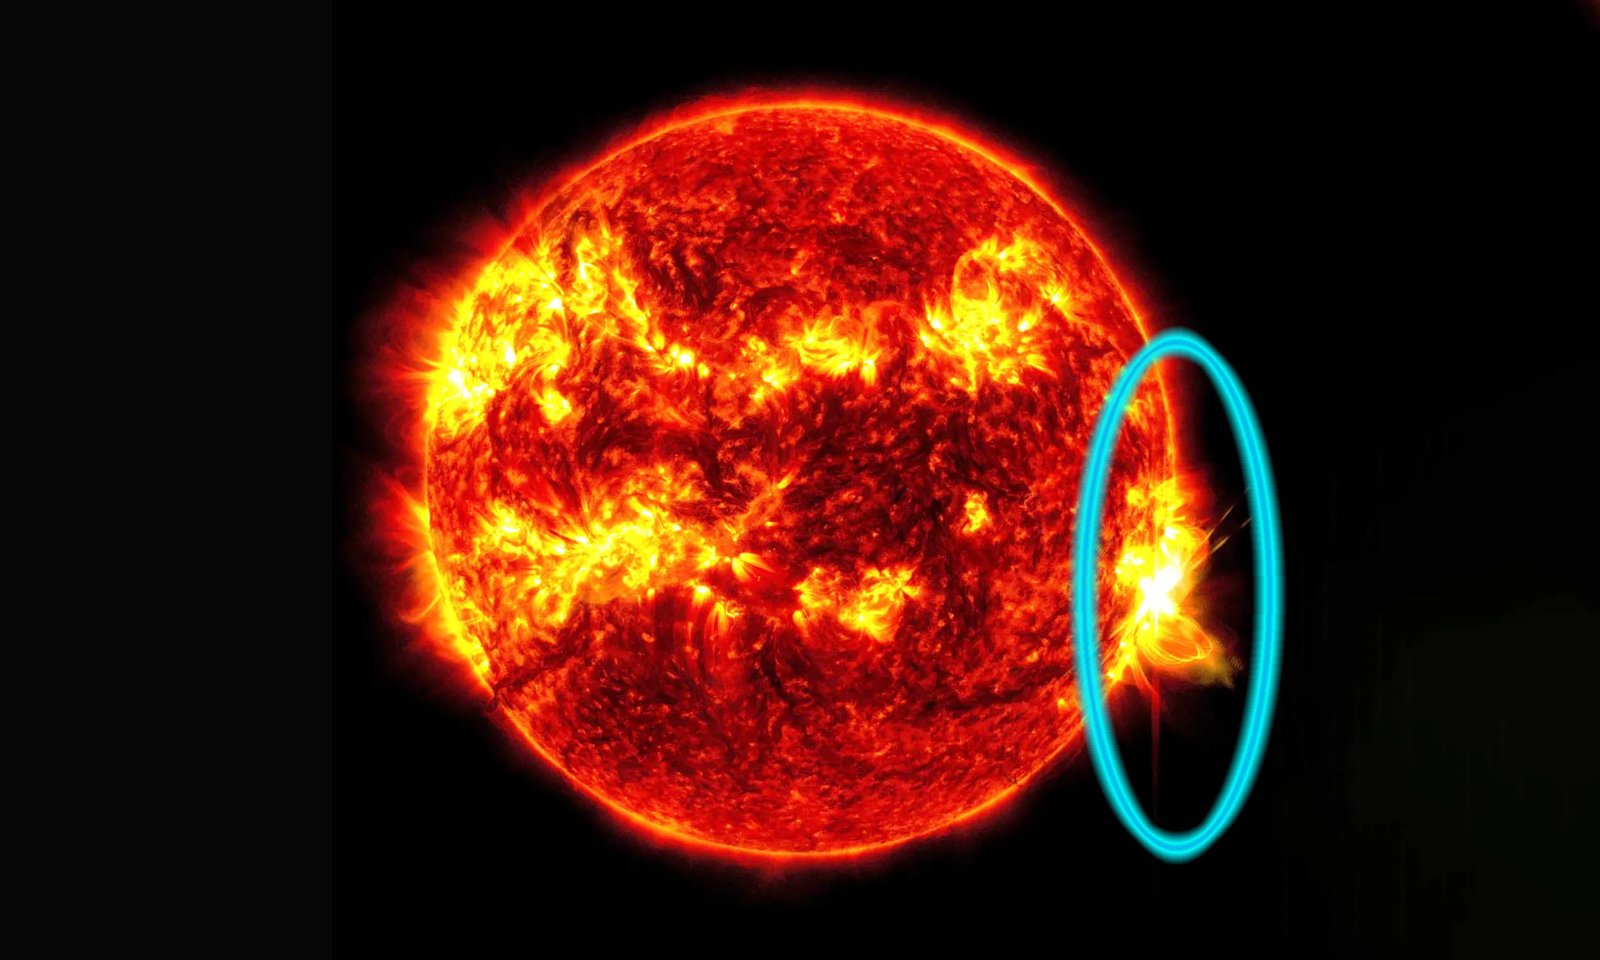 Sunce proizvelo najveću solarnu baklju: Nije gotovo!